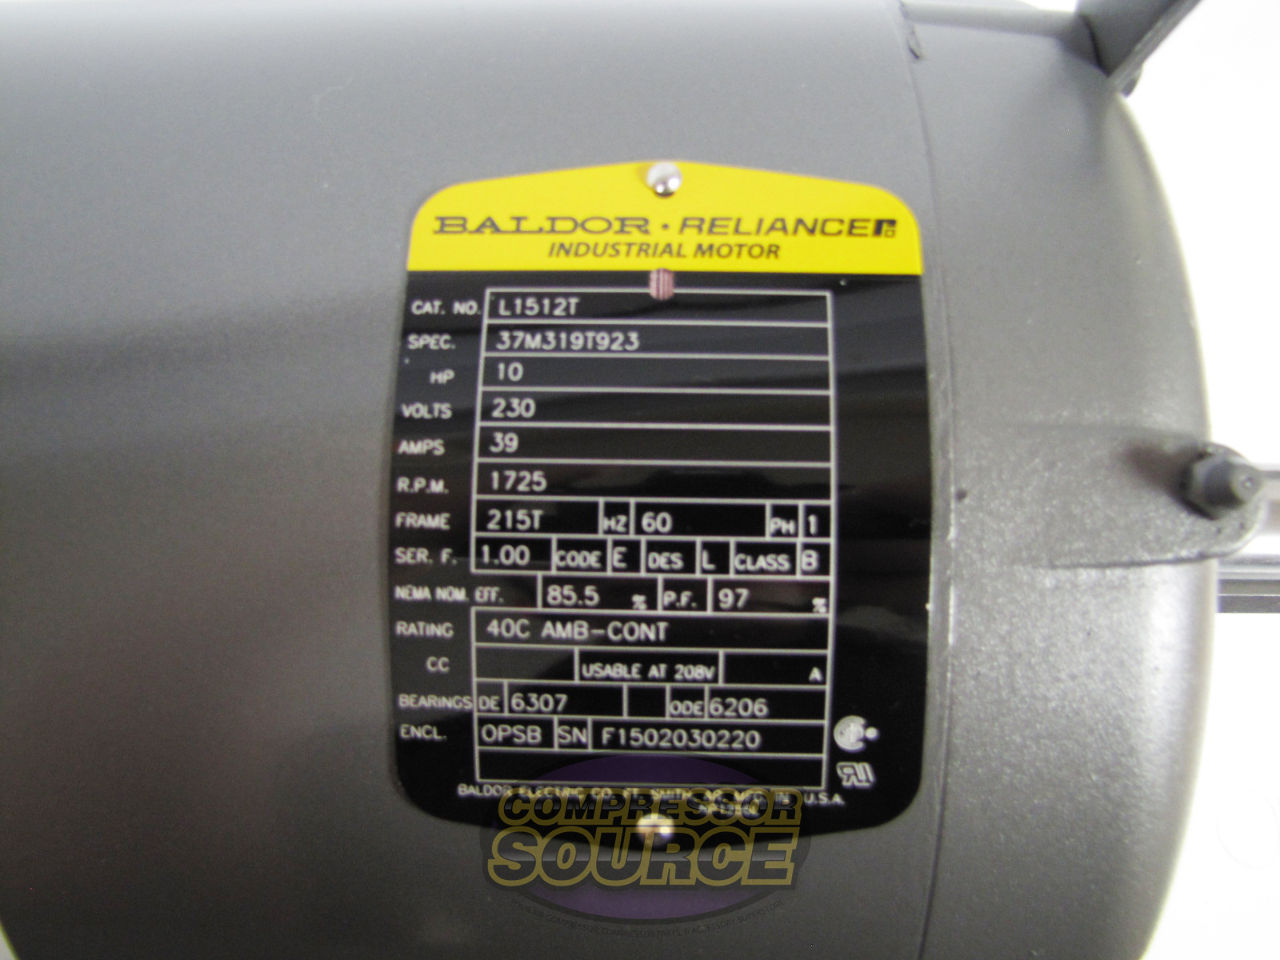 Baldor 10 HP Single Phase Electric Compressor Motor 215T Frame 230V 1725 RPM